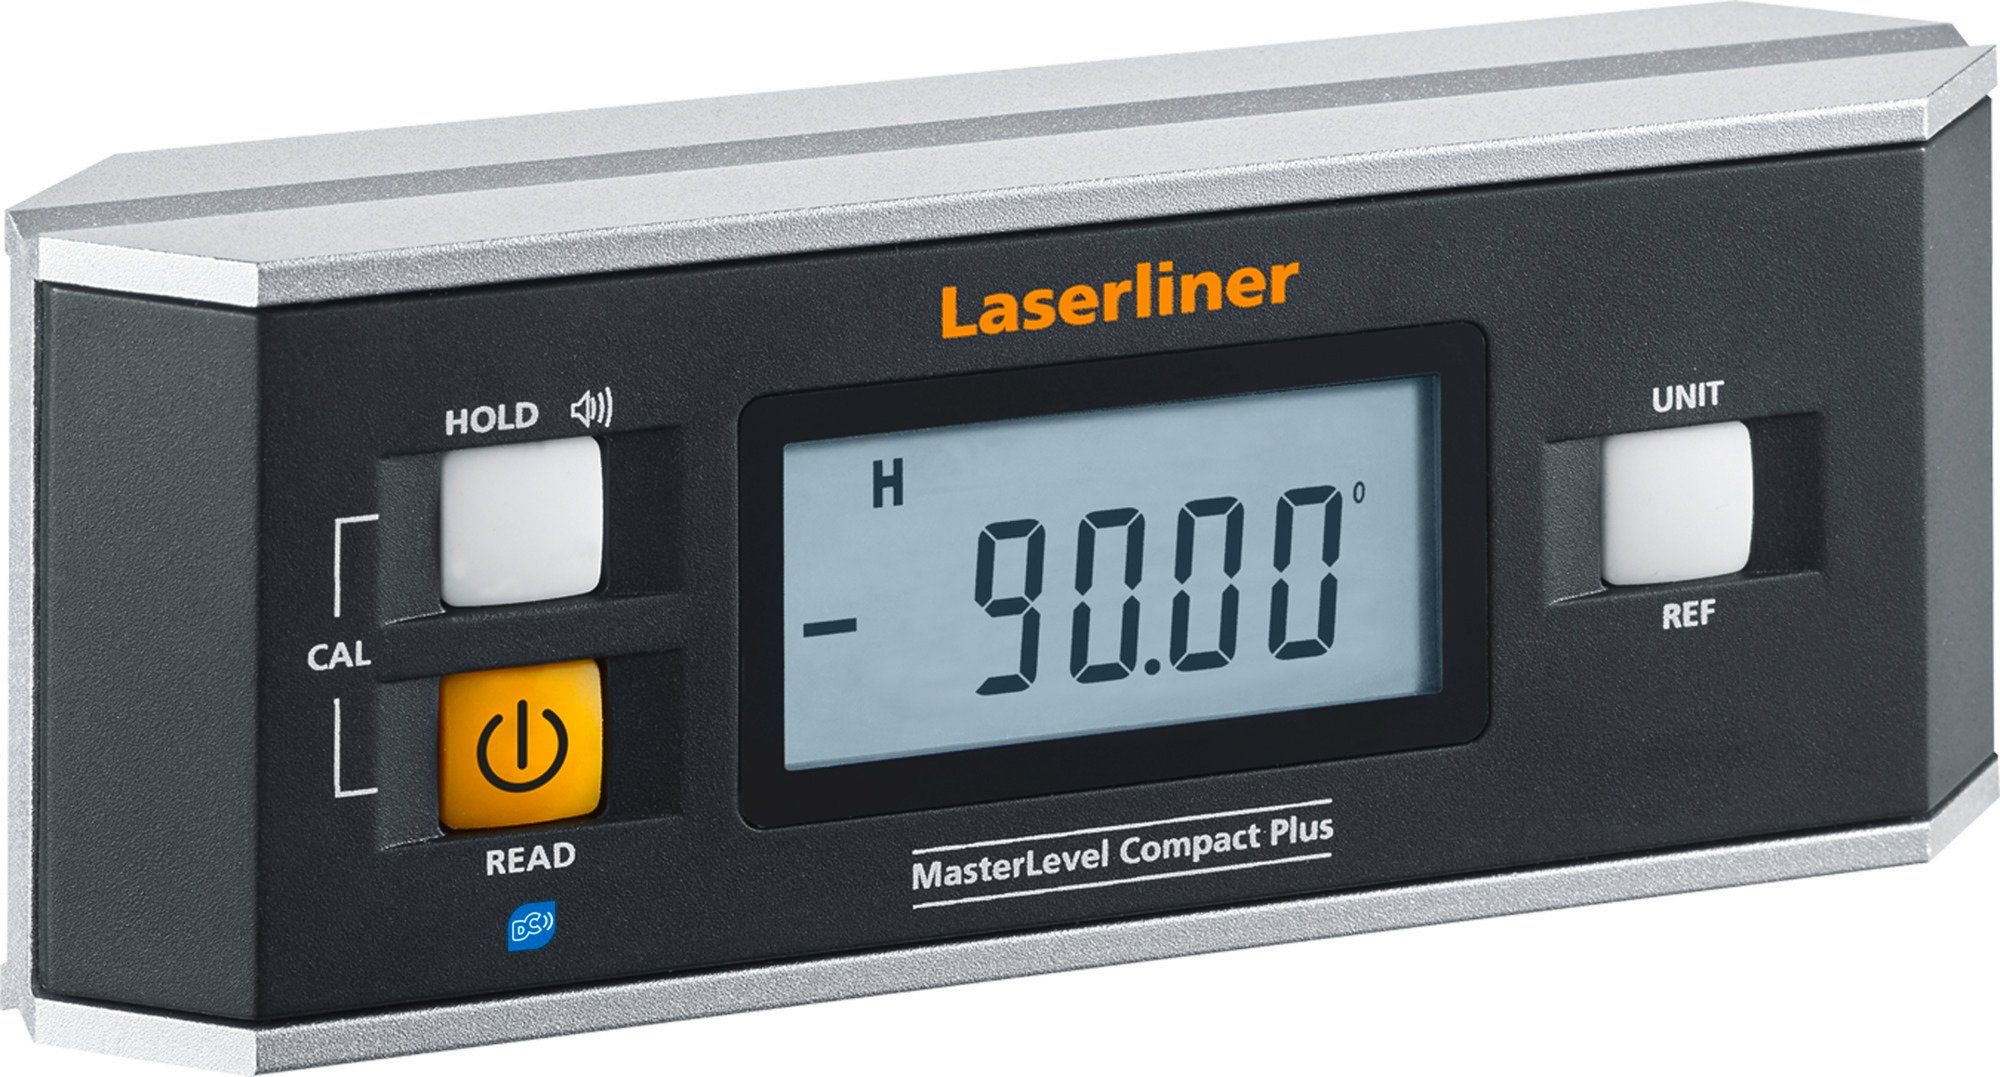 LASERLINER Wasserwaage Umarex Laserliner MasterLevel Compact Plus Elektronik Wasserwaage